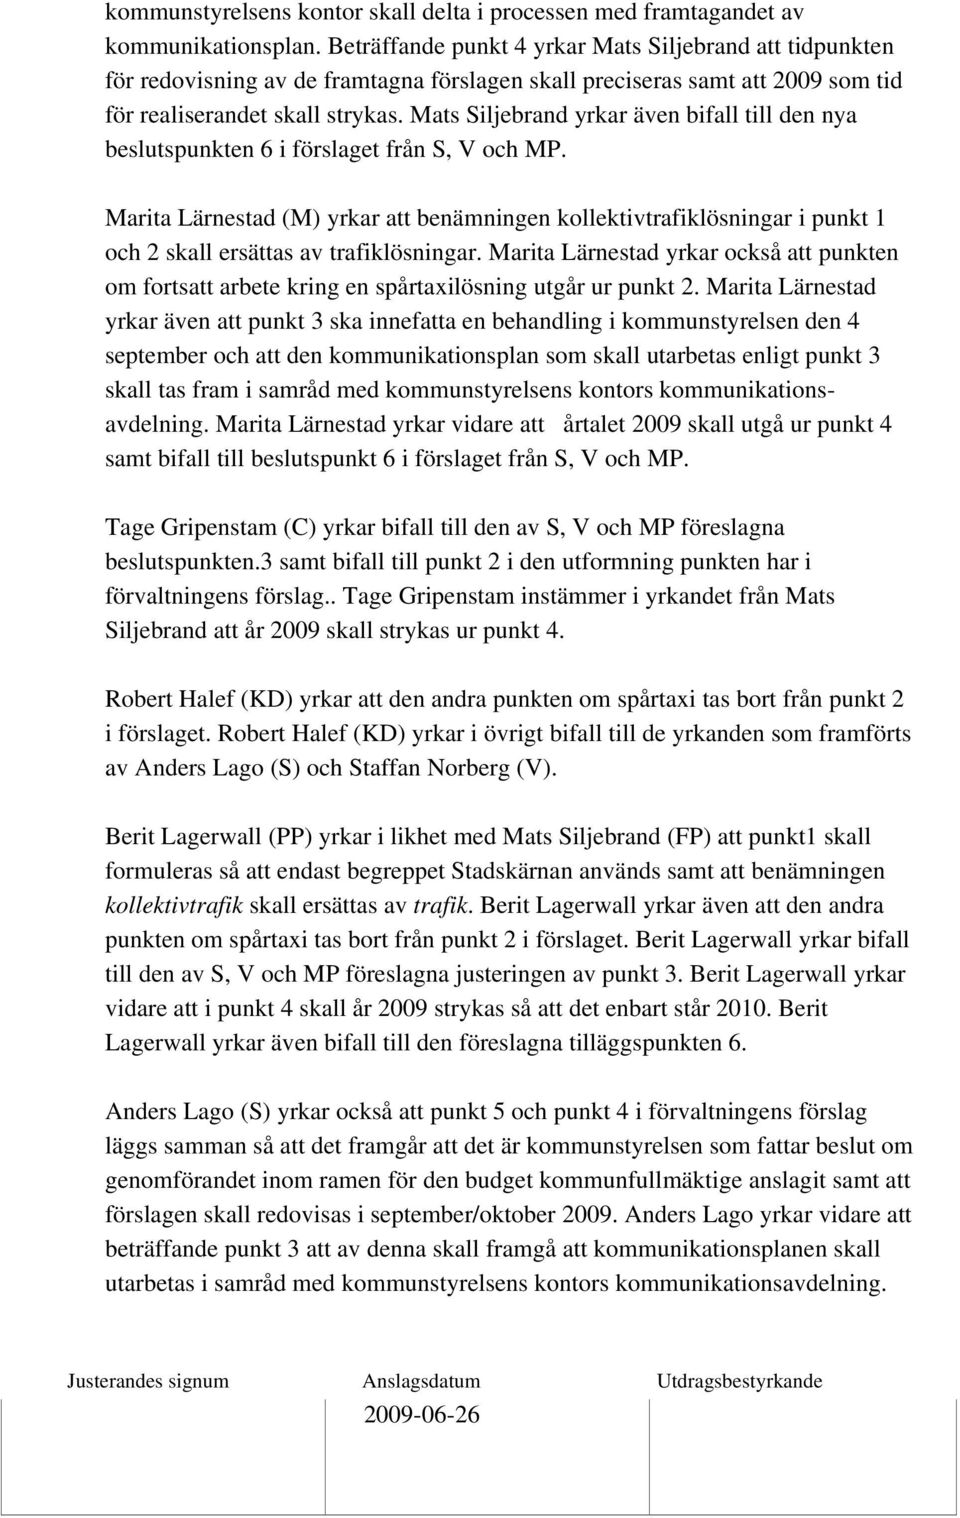 Mats Siljebrand yrkar även bifall till den nya beslutspunkten 6 i förslaget från S, V och MP.